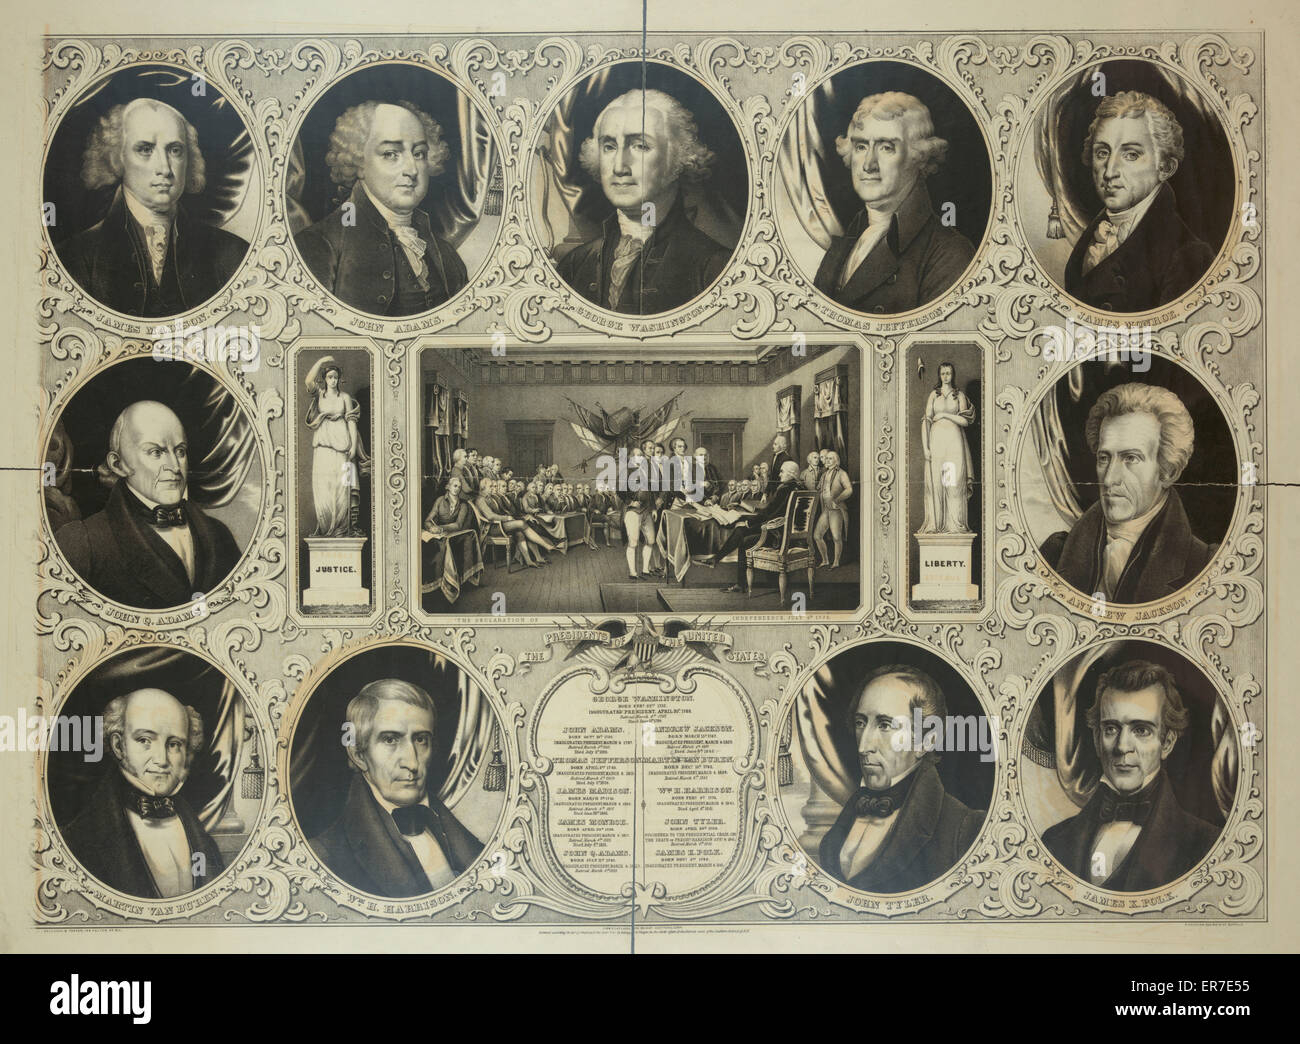 Die Präsidenten der Vereinigten Staaten. Datum c1846 Dez. 19. Stockfoto